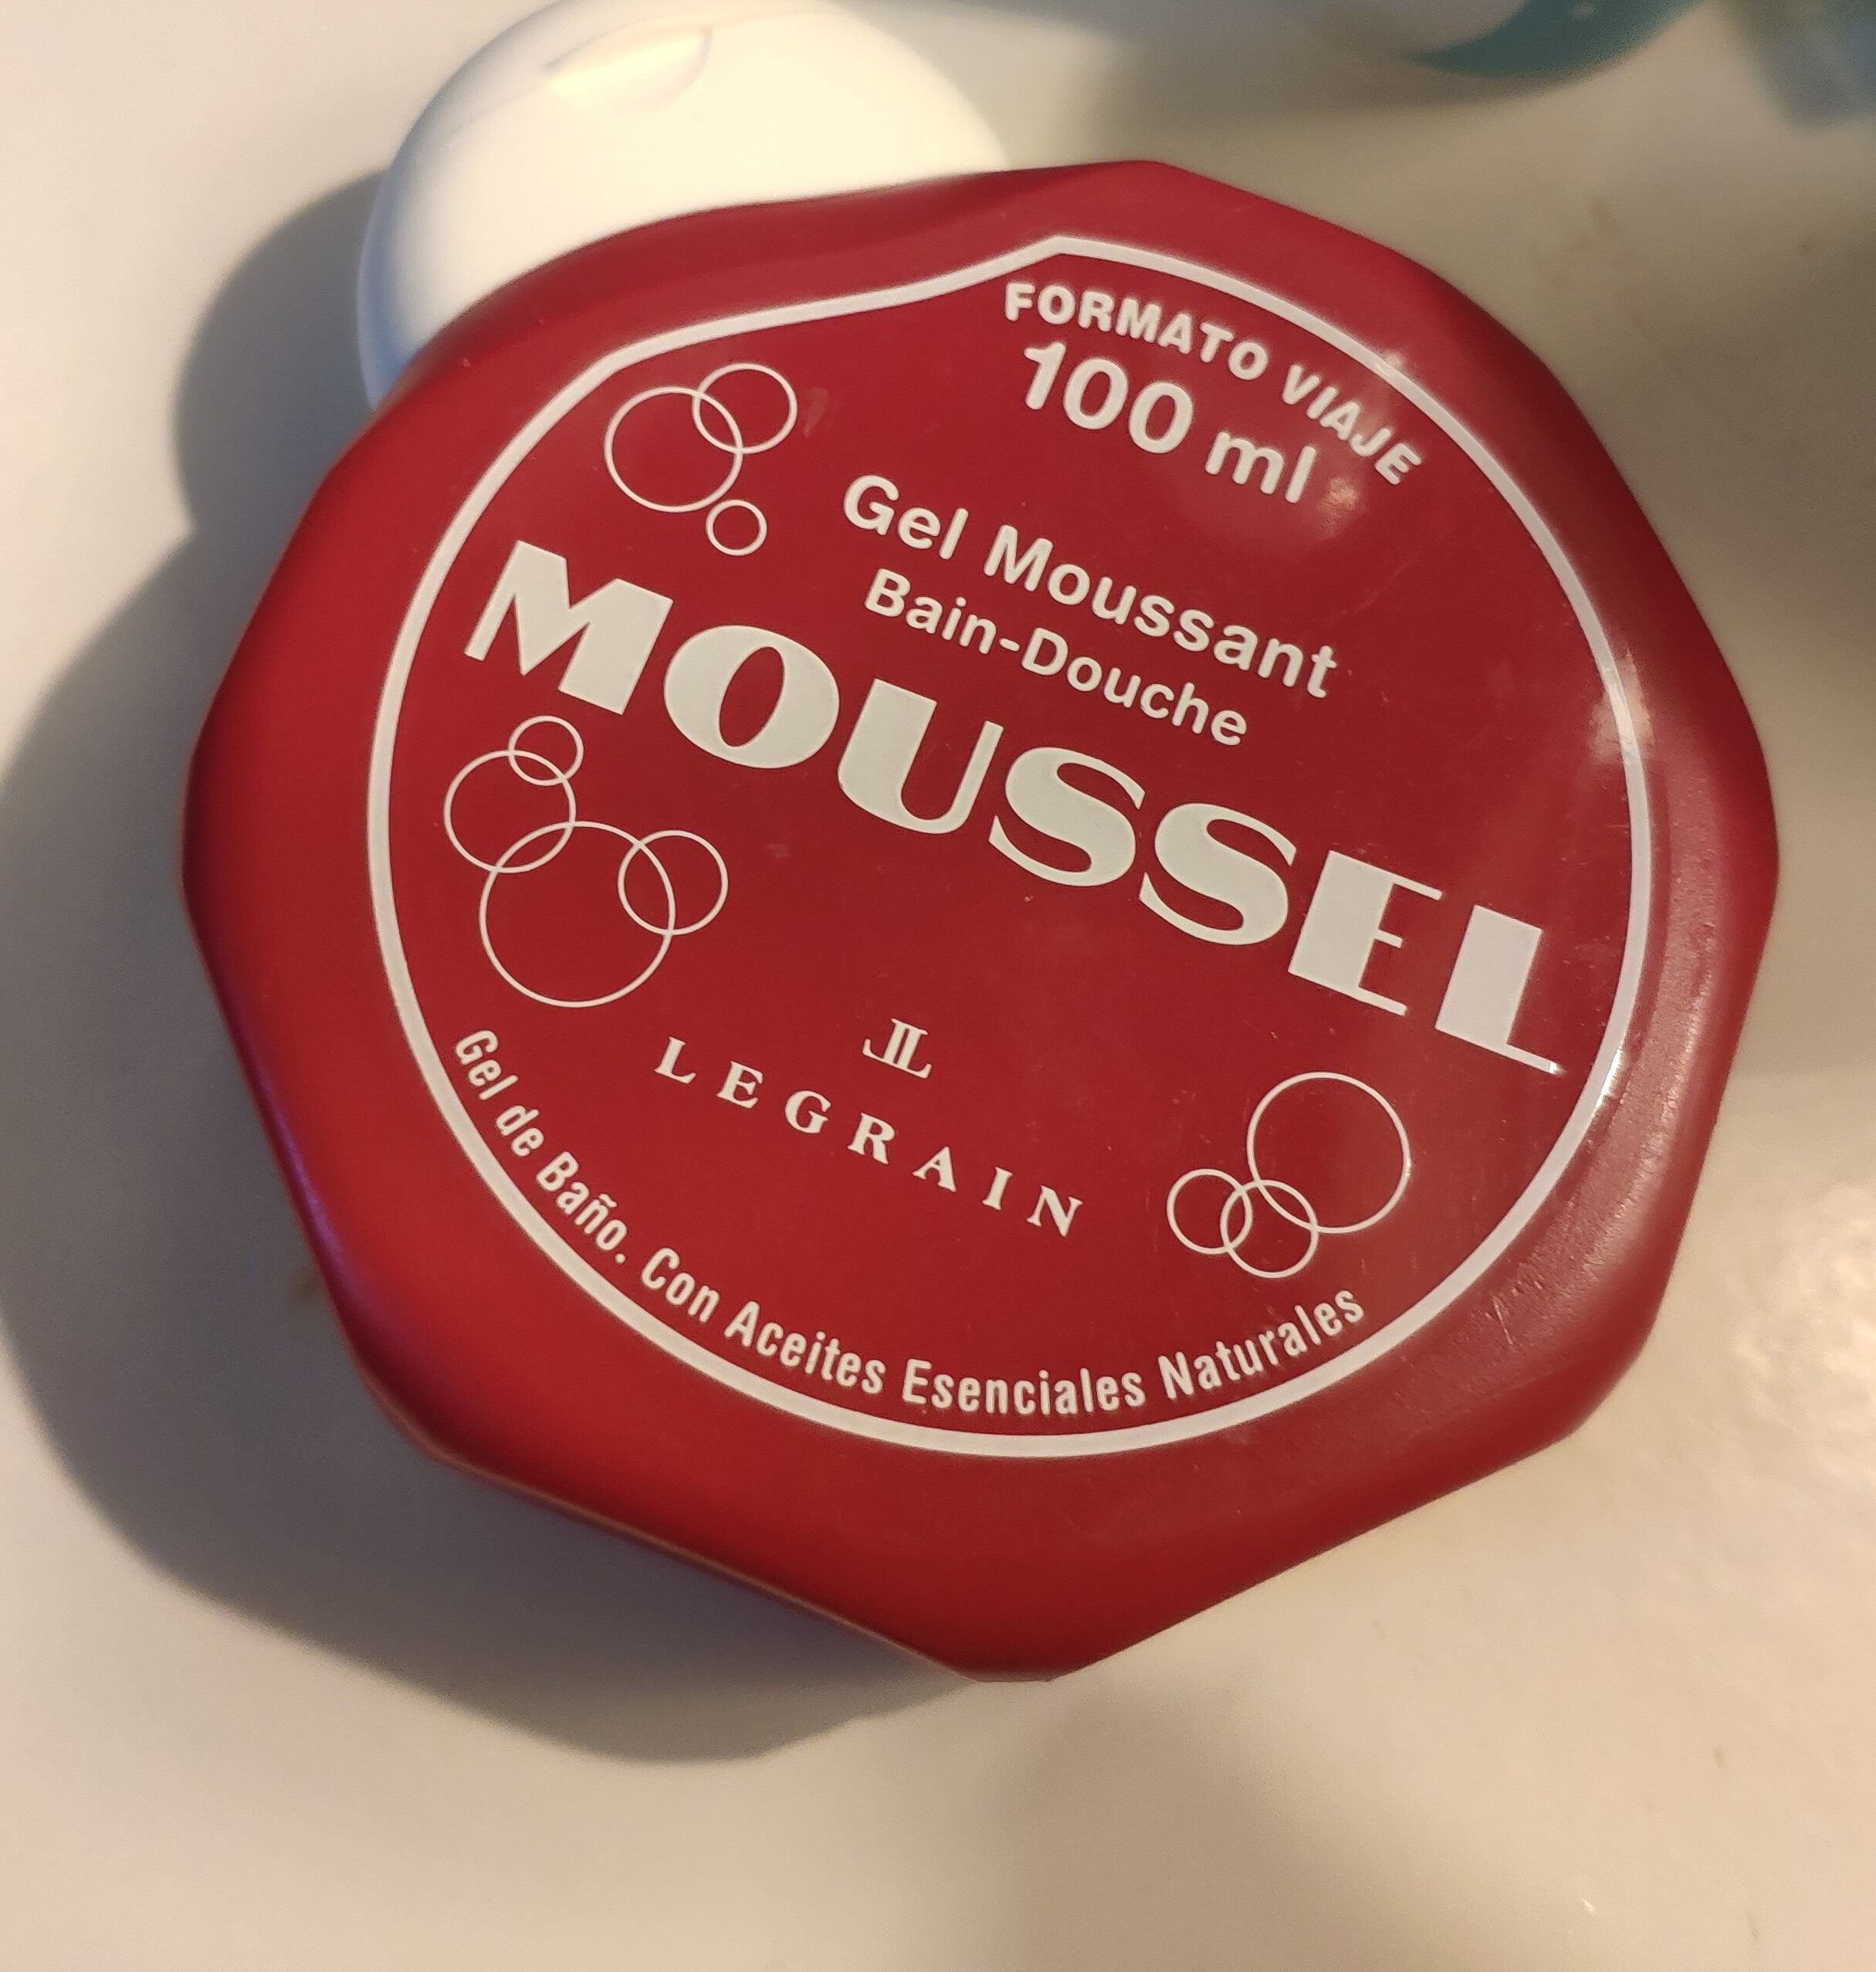 Gel de baño Moussel - Product - en